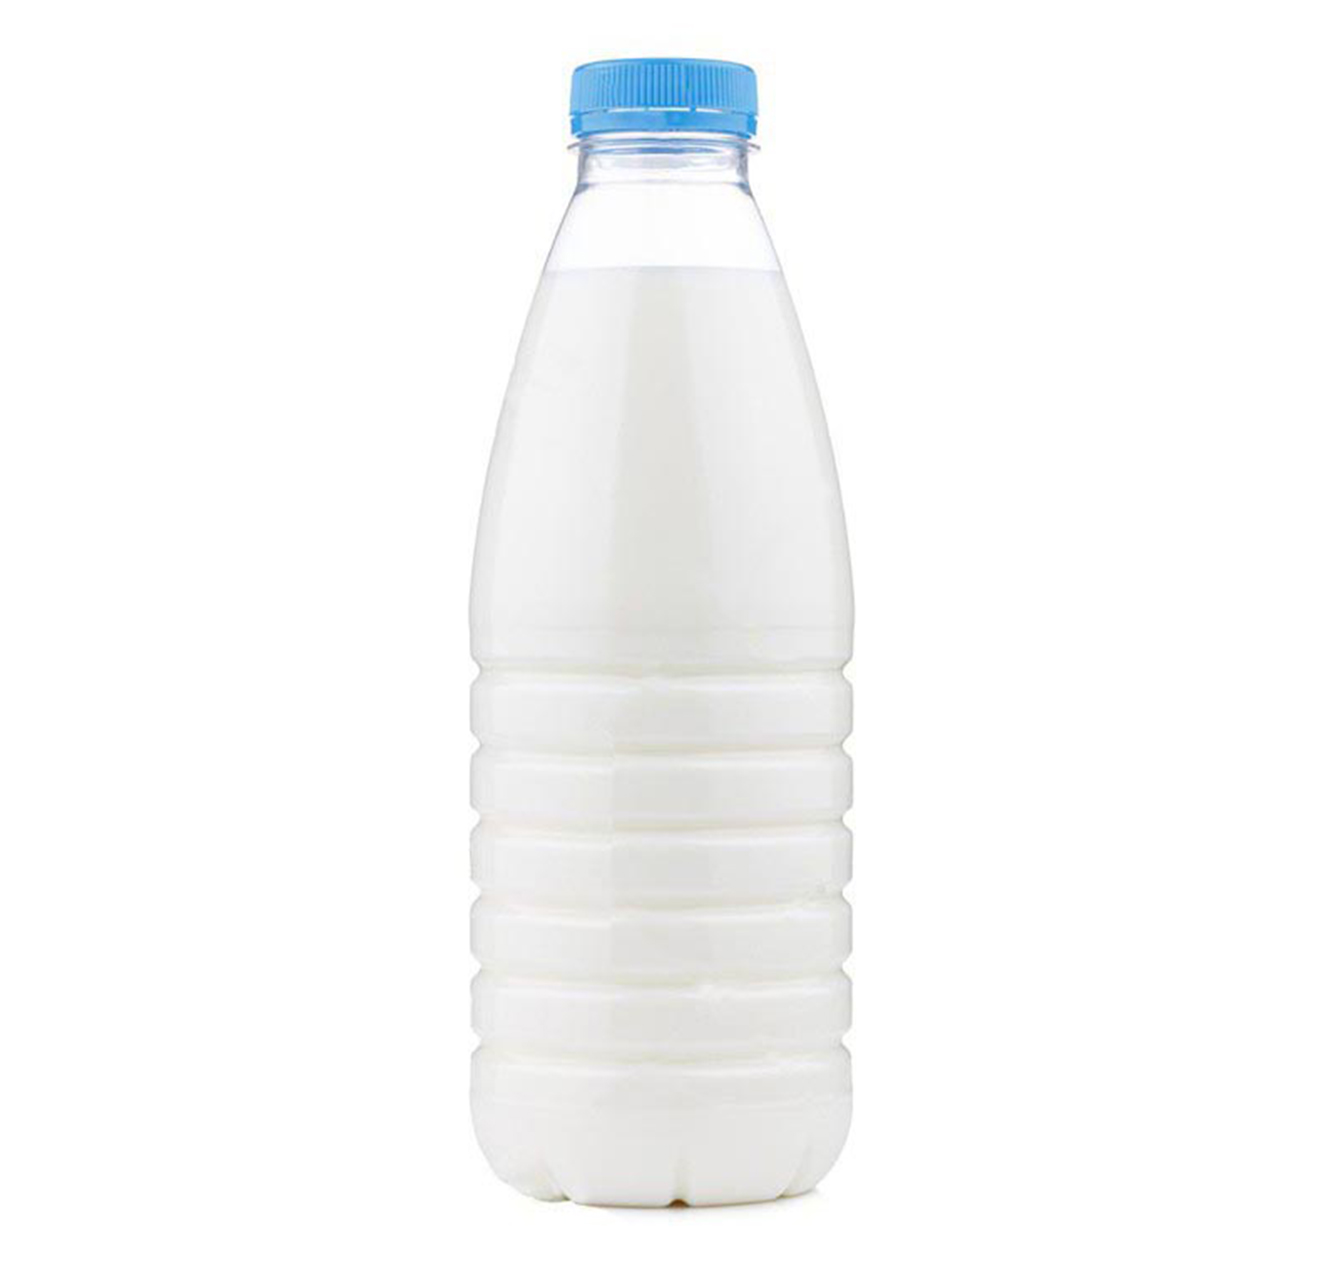 bottiglia in pet da 1 lt per distributore di latte crudo, olio o vino